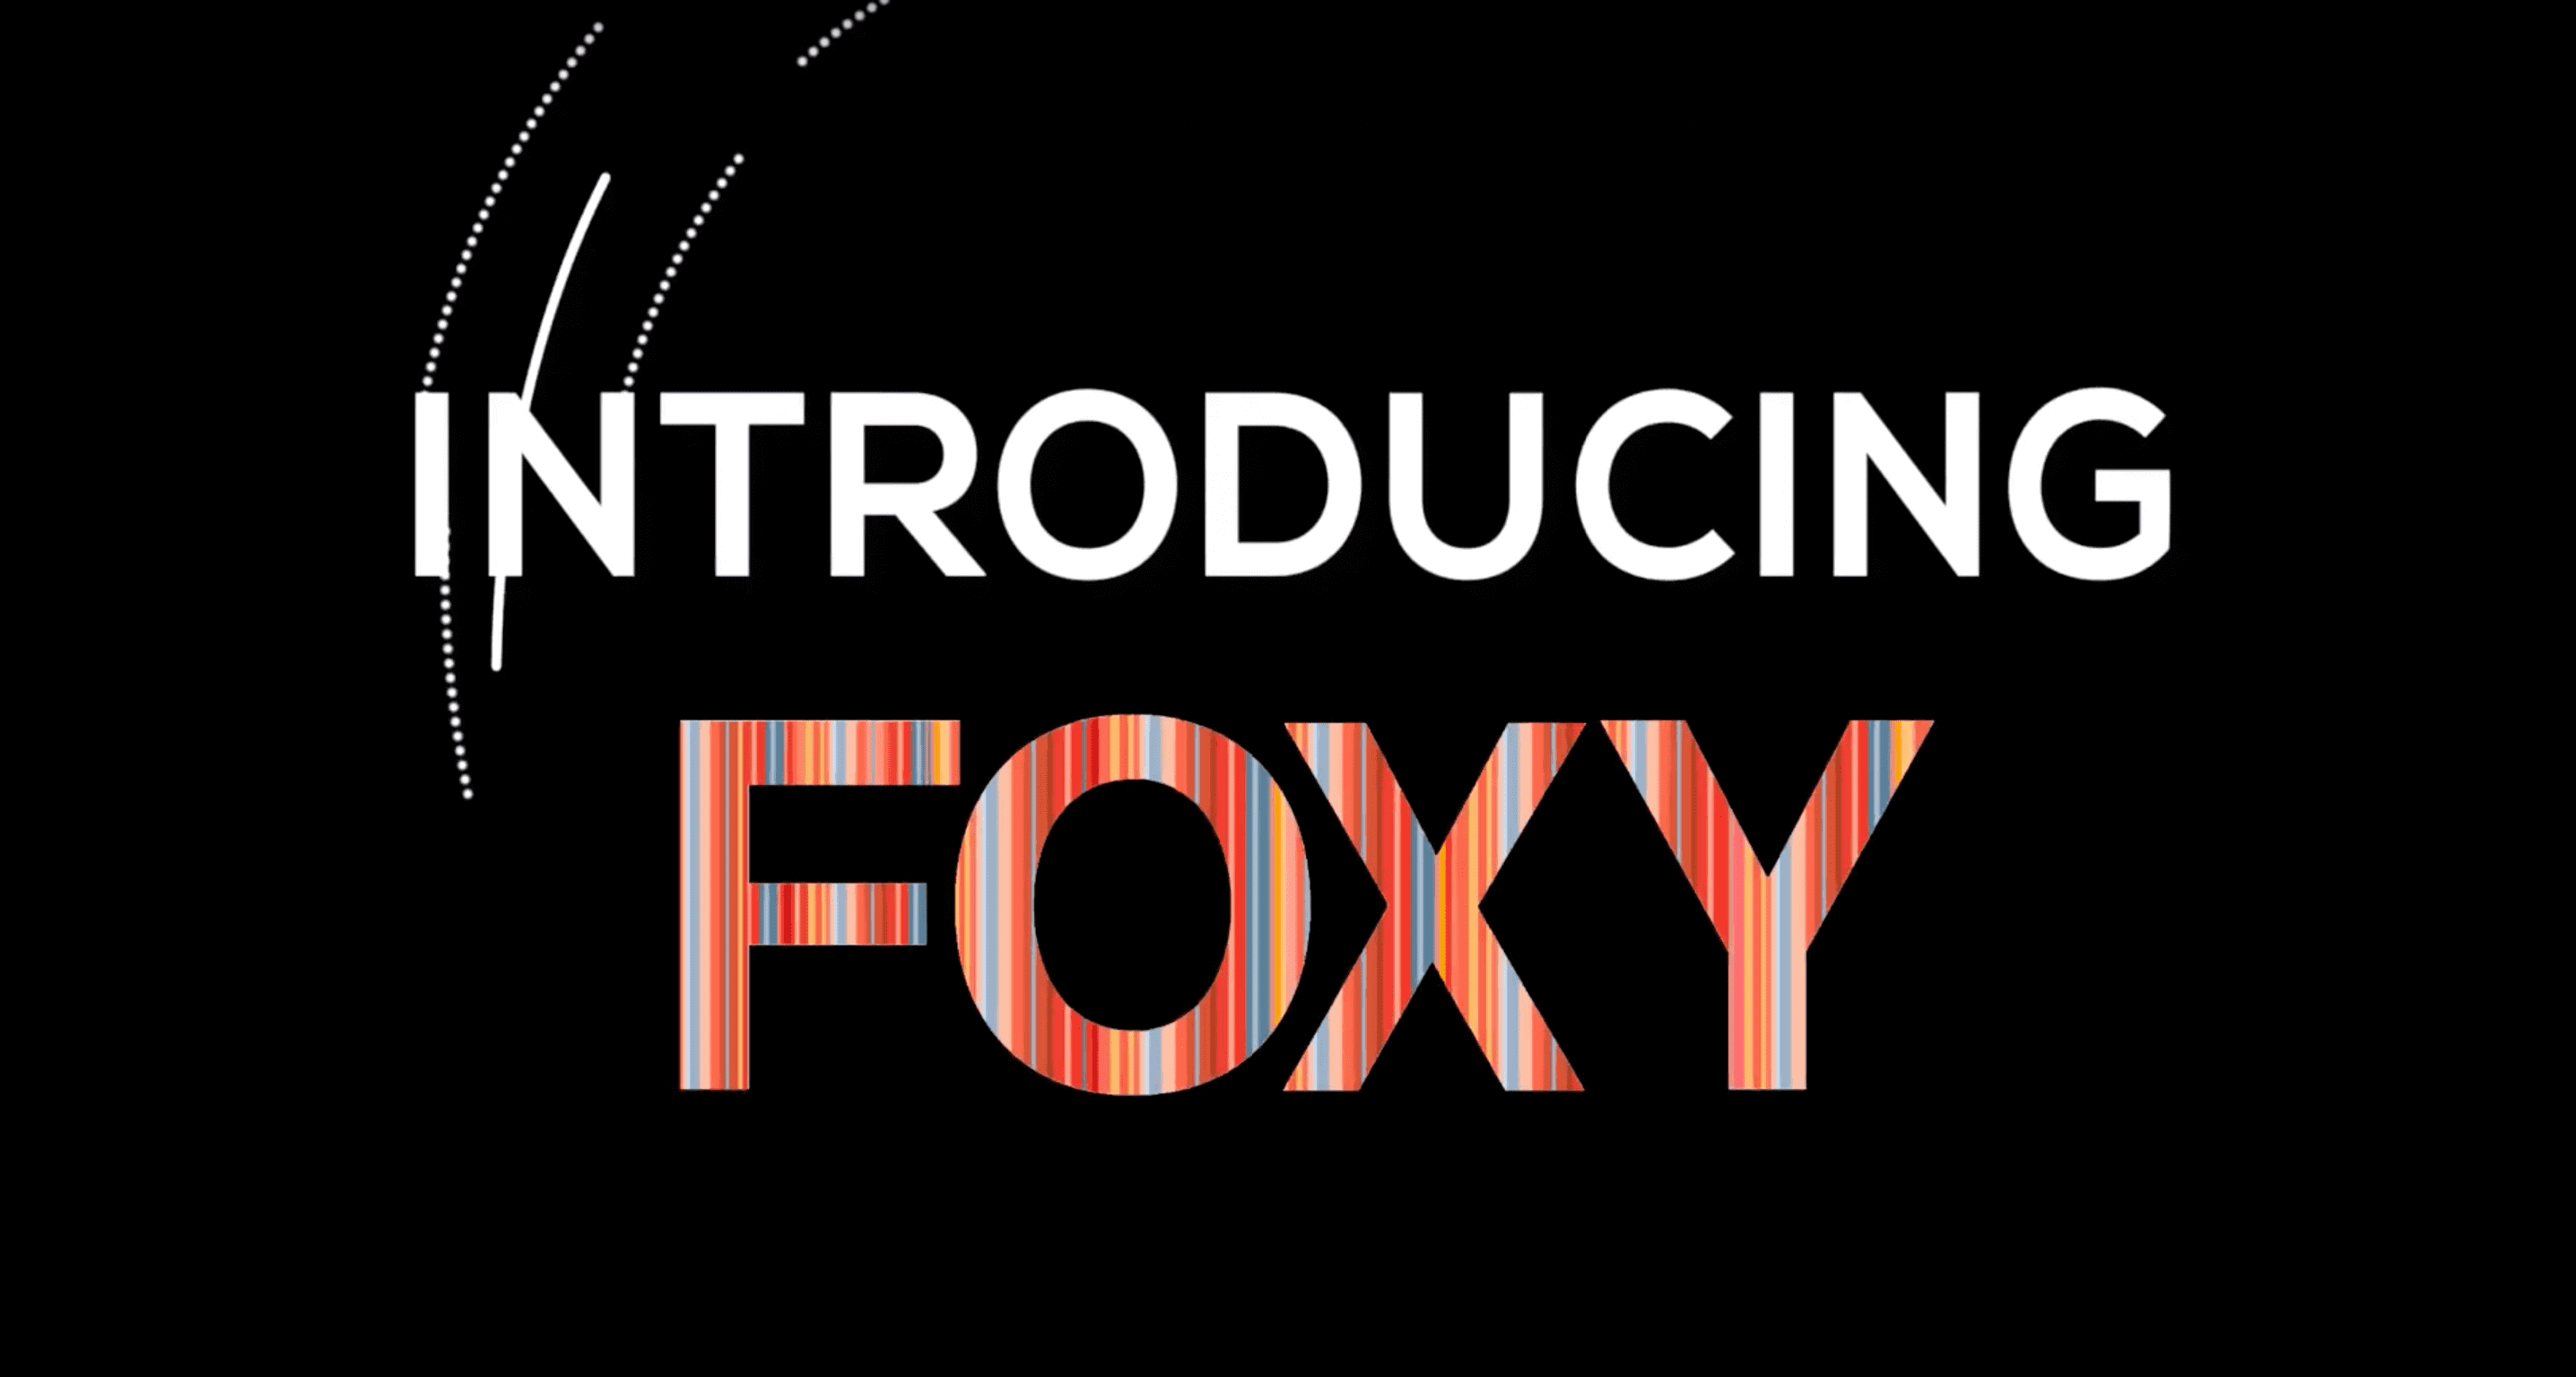 Foxy App Is Not-Working